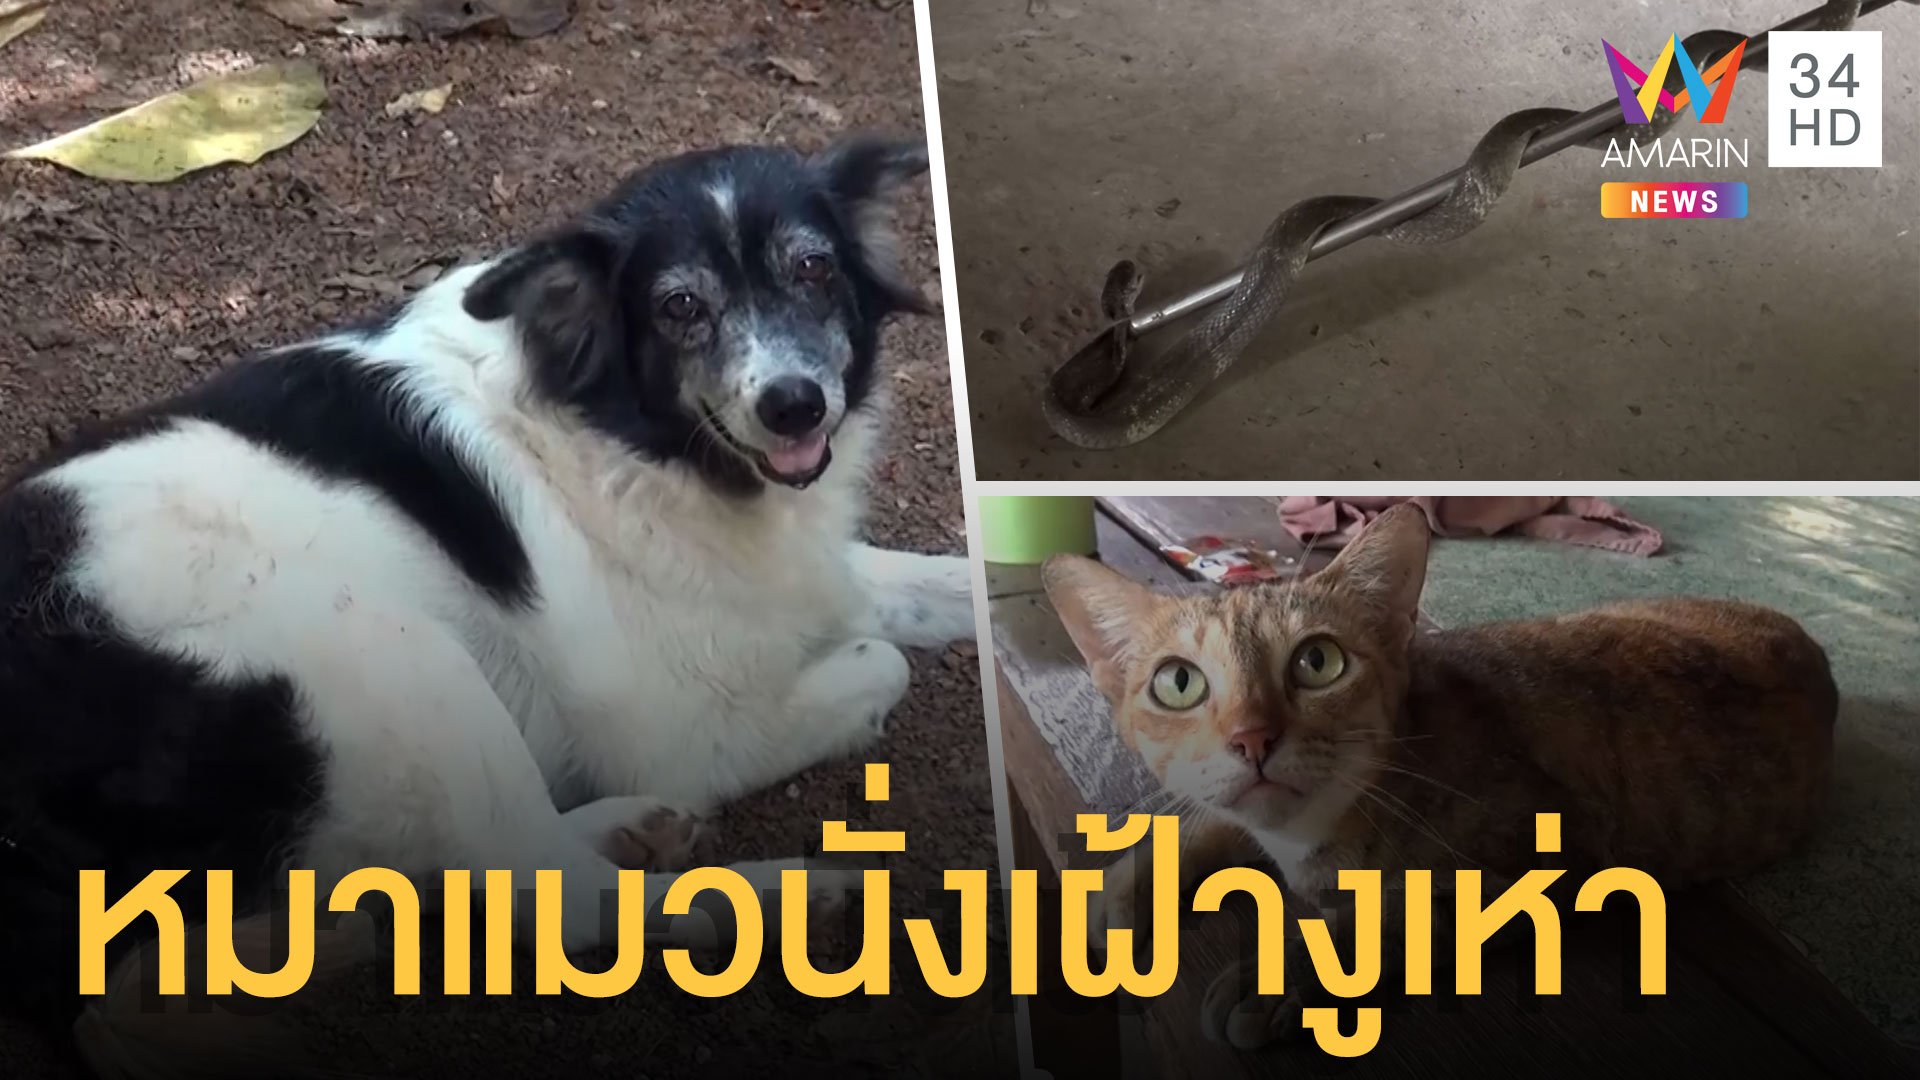 งูเห่าเข้าบ้านกินคางคก หมาแมวนั่งเฝ้าไม่ไปไหน | ข่าวอรุณอมรินทร์ | 27 ส.ค. 64 | AMARIN TVHD34